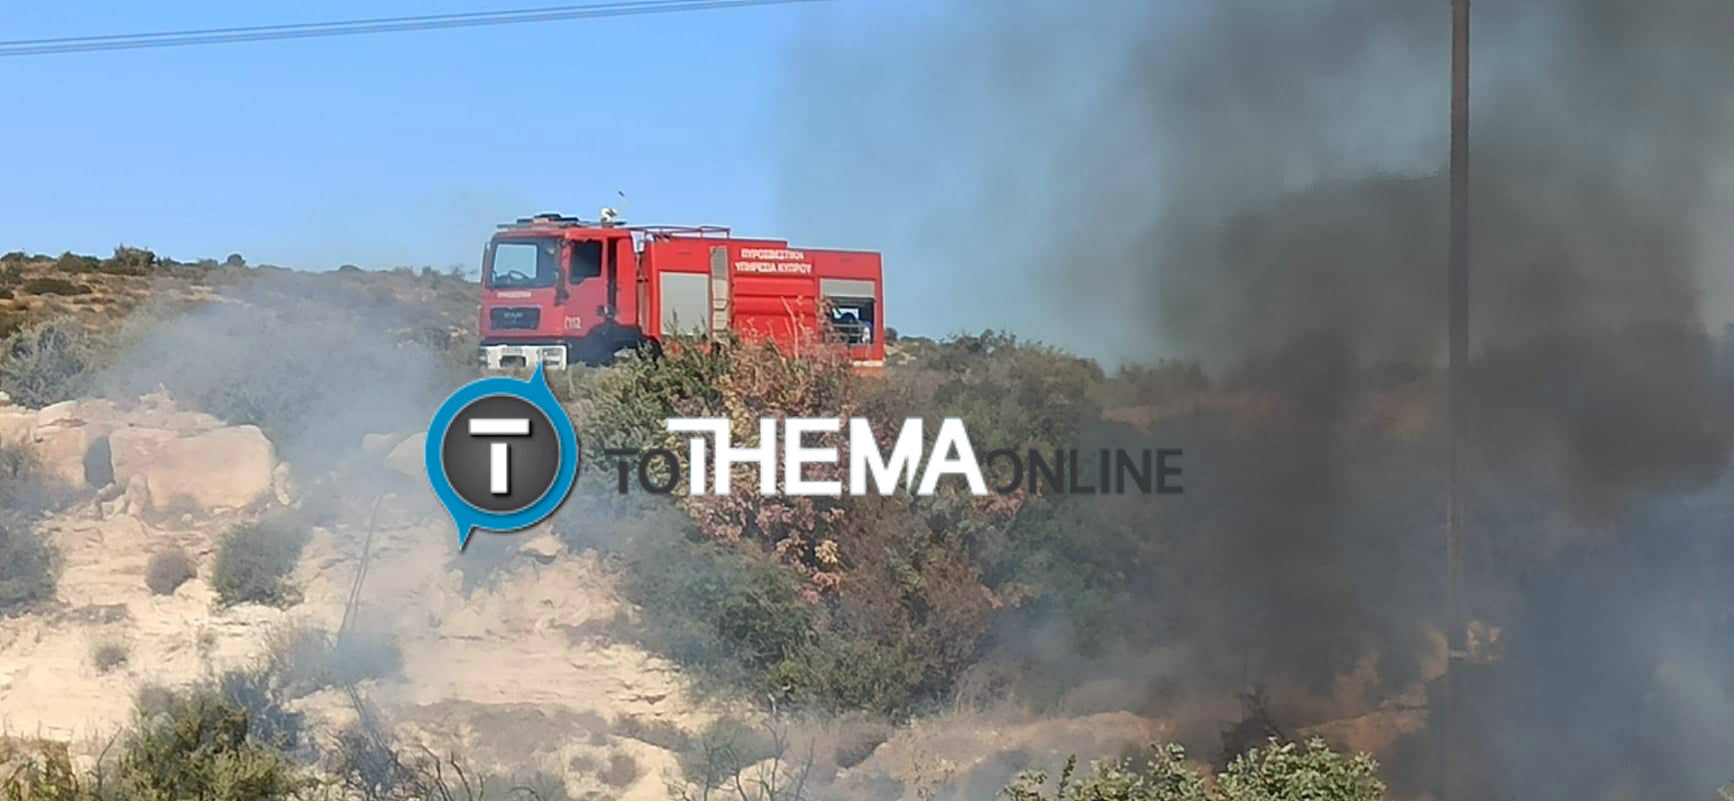 Ξέσπασε φωτιά φωτιά στη Λεμεσό - Στο σημείο ισχυρές δυνάμεις πυρόσβεσης - ΦΩΤΟΓΡΑΦΙΕΣ & BINTEO 